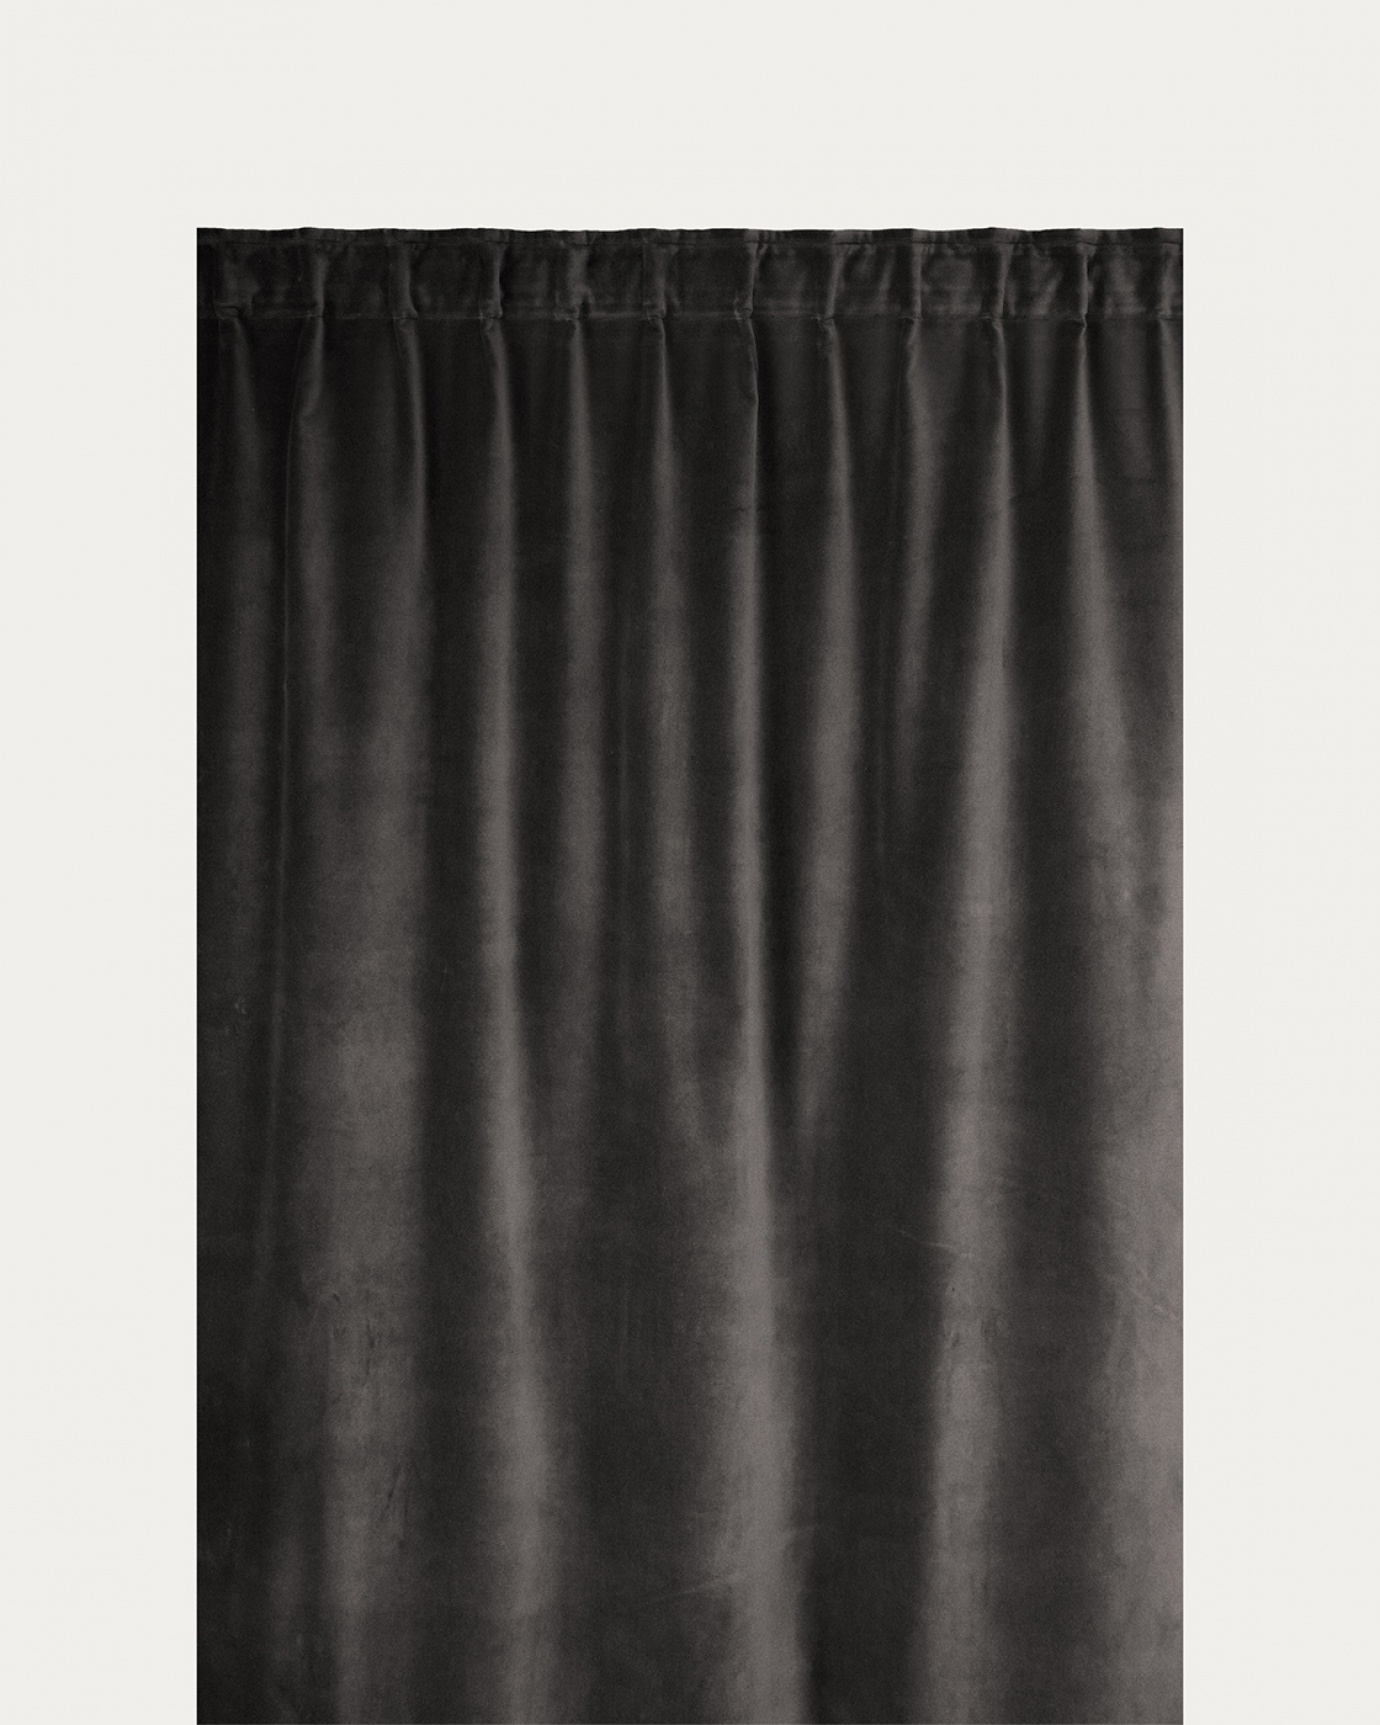 Produktbild dunkles anthrazitgrau PAOLO Gardine aus Baumwollsamt mit Fertigfalten von LINUM DESIGN. Größe 135x290 cm und in 2er-Pack verkauft.